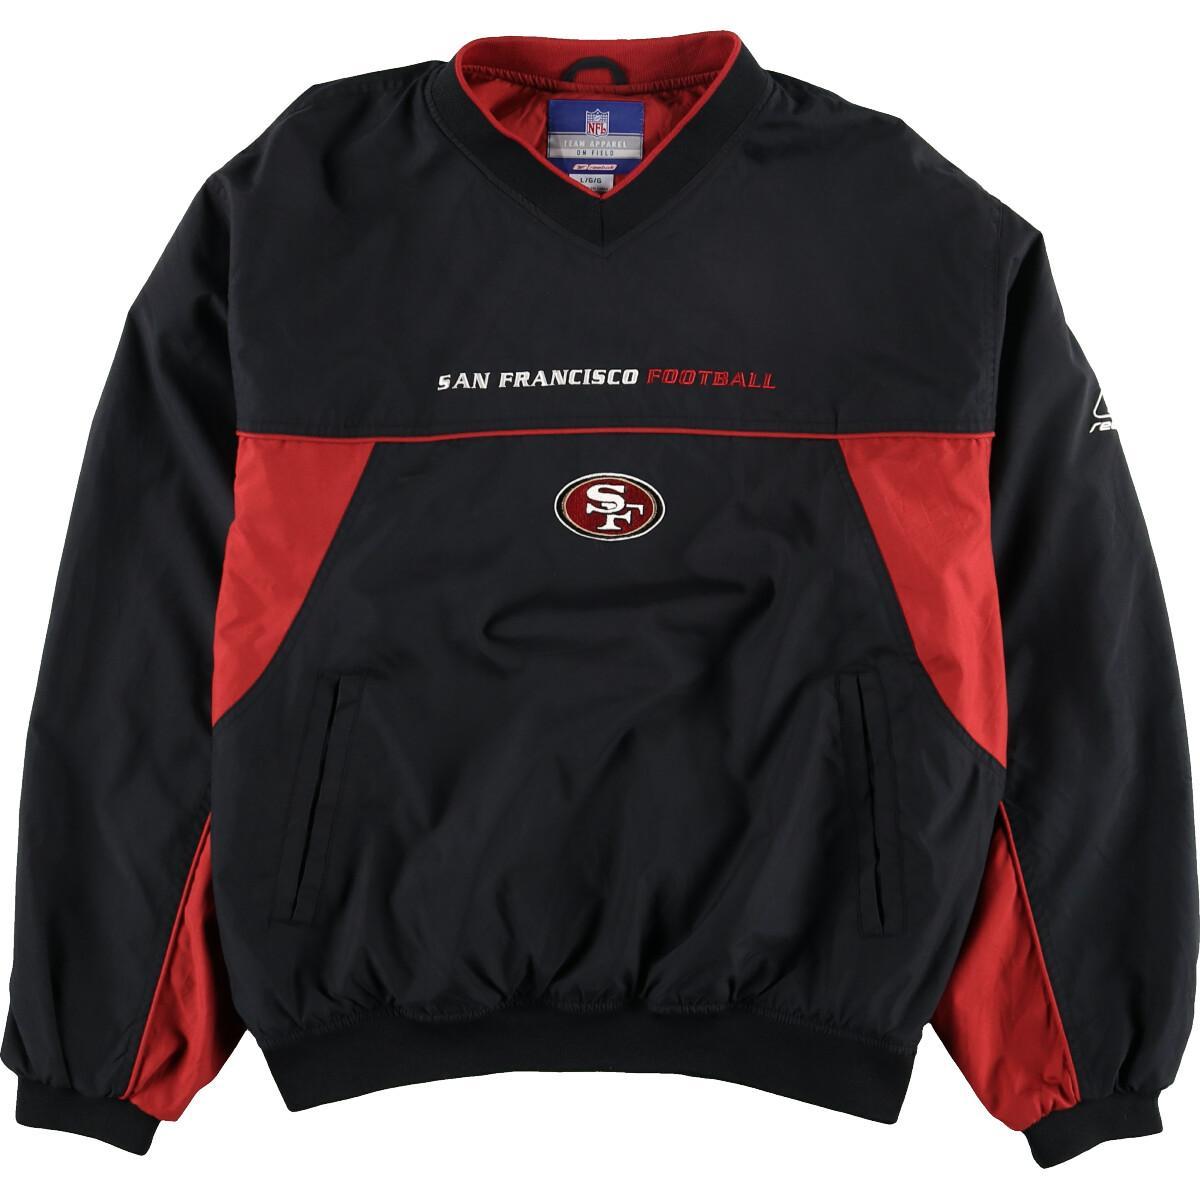 激安販壳ショップ NFL サンフランシスコ・フォーティナイナーズ プルオーバージャケット ナイロンジャケット